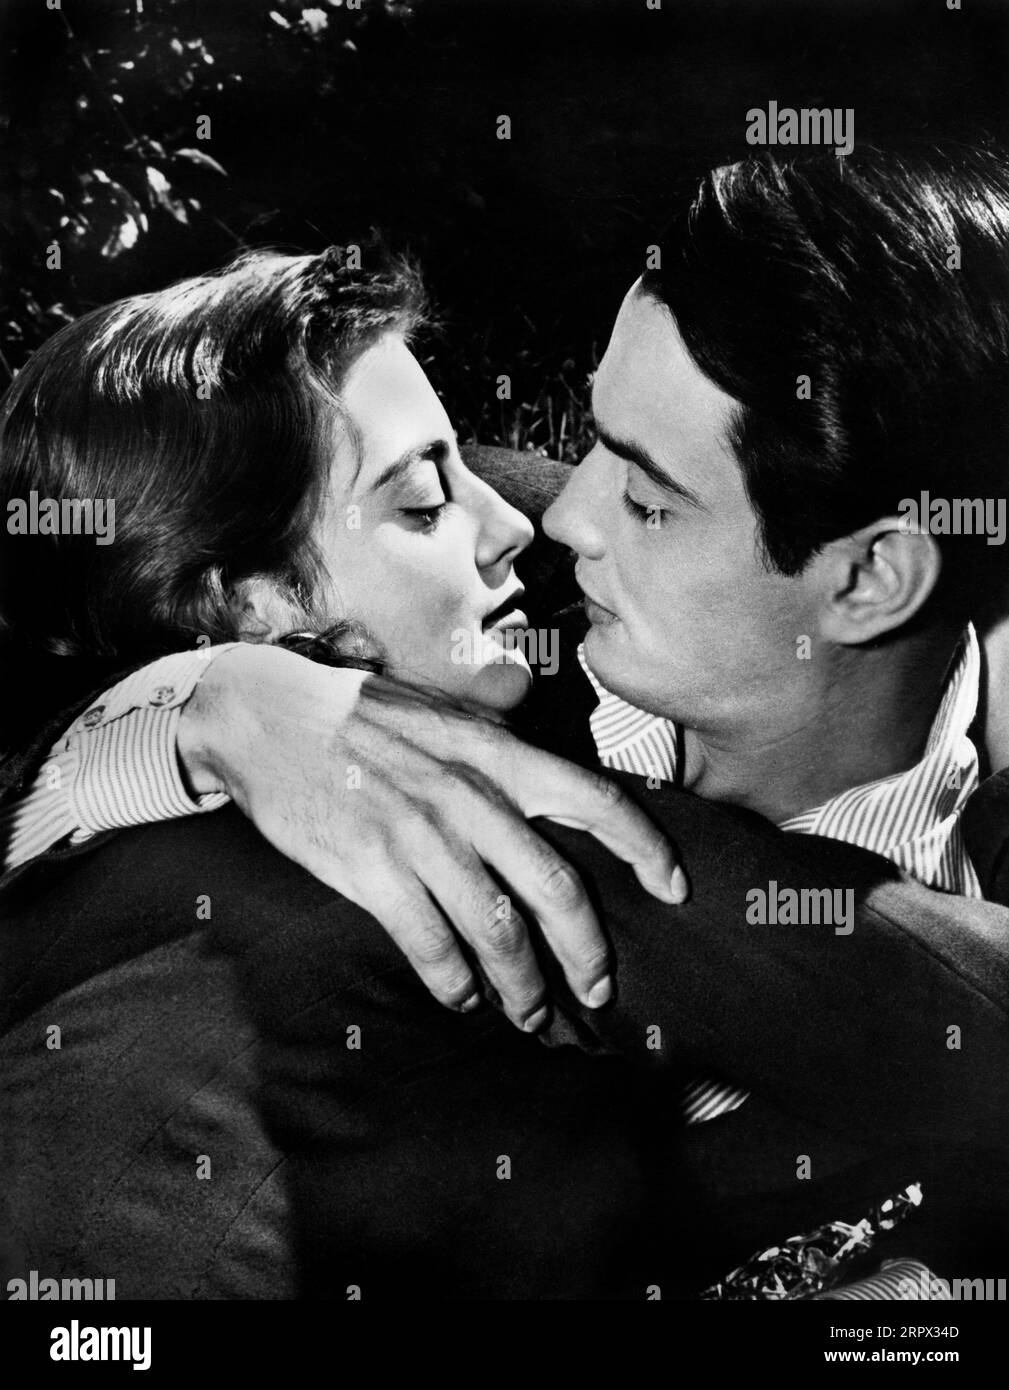 Anna Maria Ferrero, massimo Serato, sul set del film italiano "la vedova", italiano: La vedova X, Venturini Film, 1955 Foto Stock